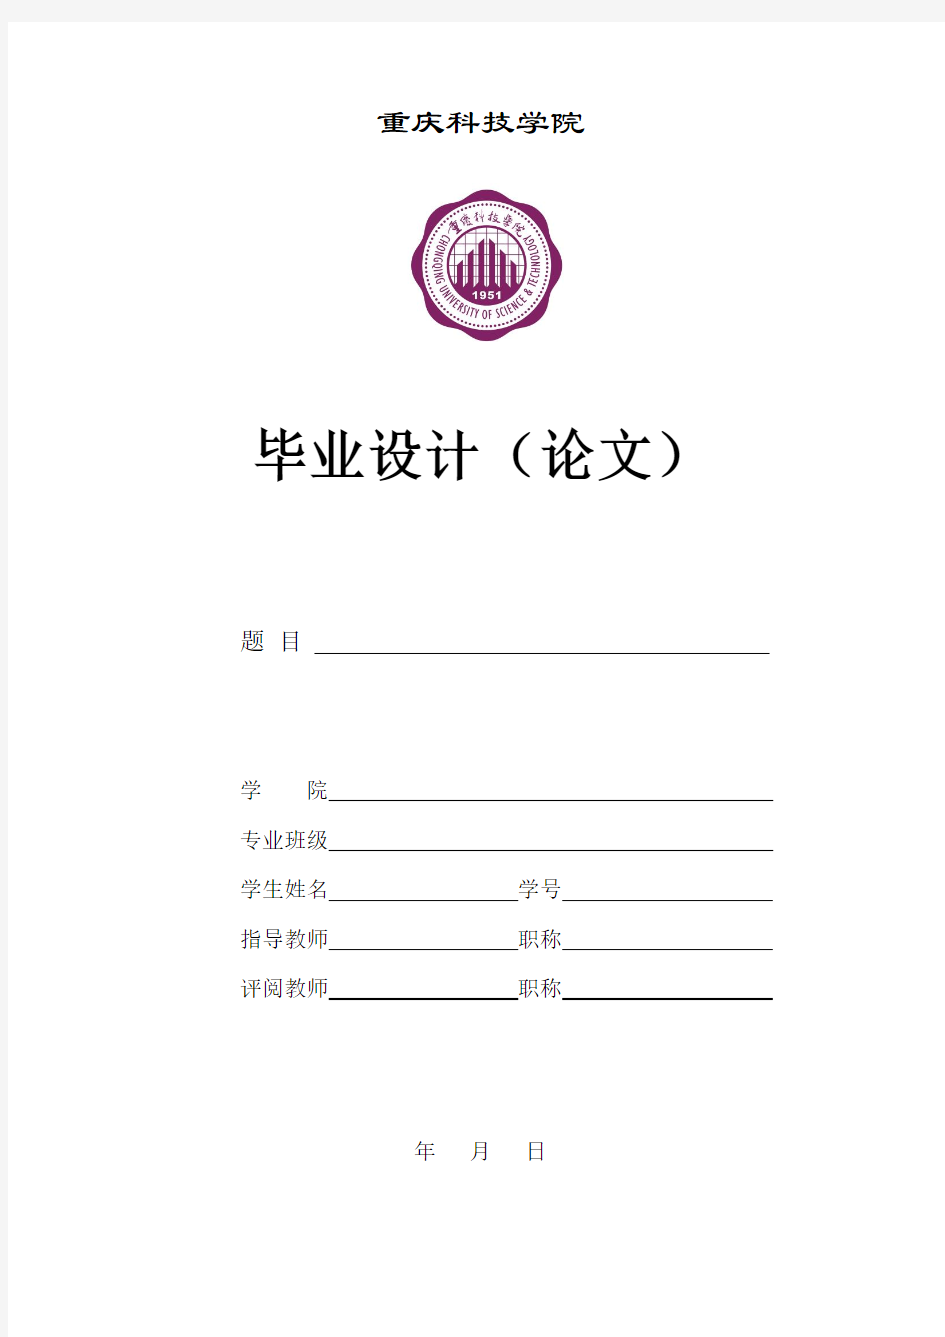 重庆科技学院论文封面及要求(正版带校徽)